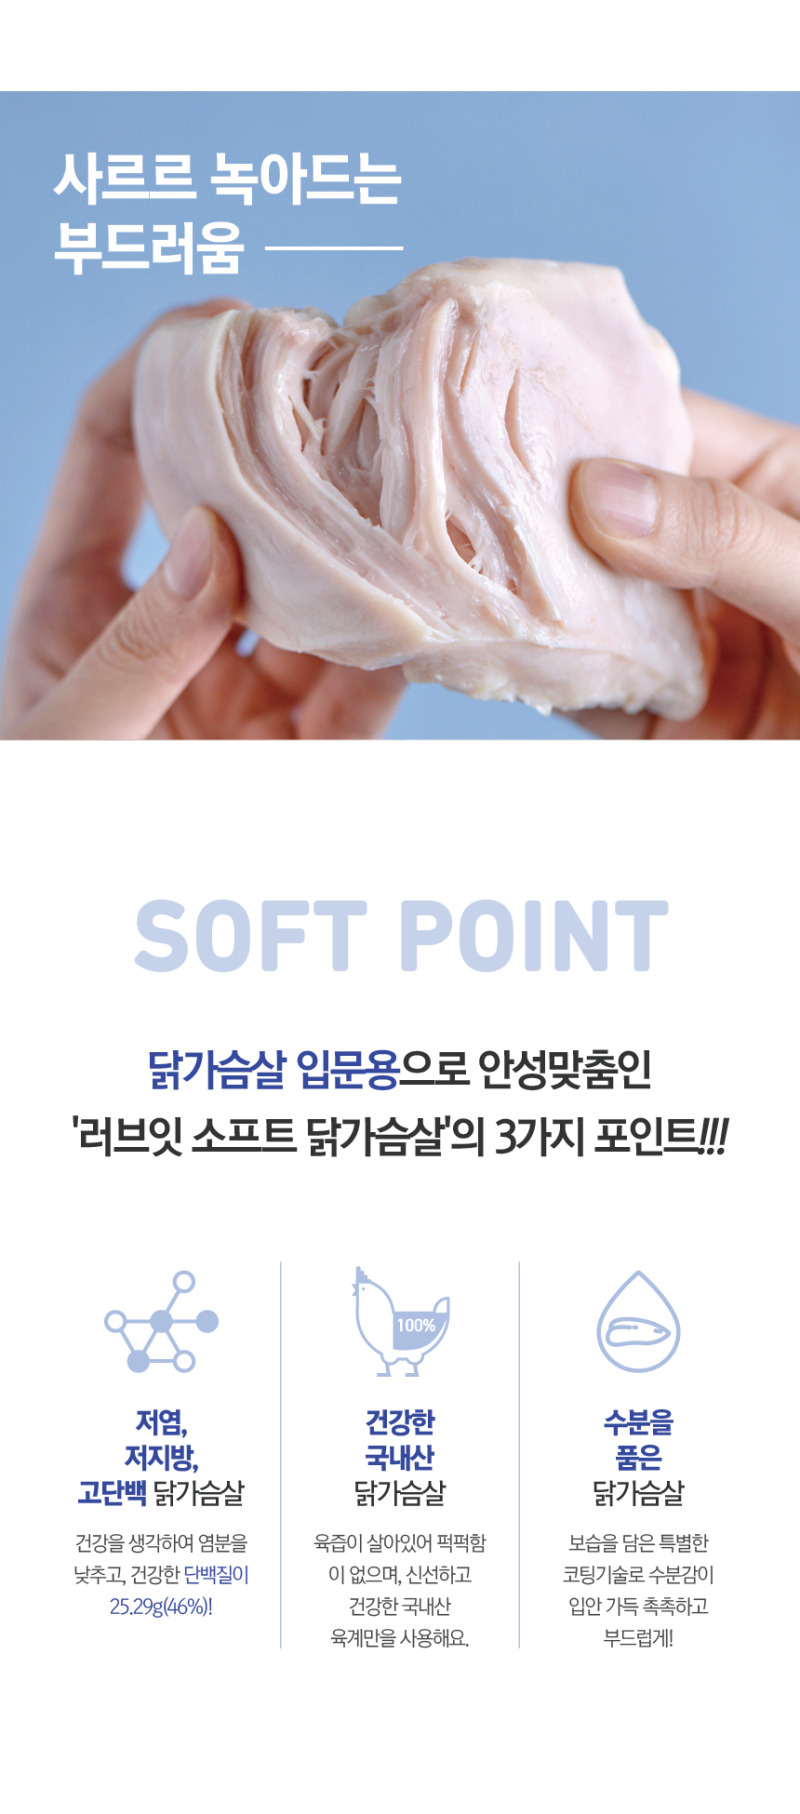 韓國食品-[러브잇] 소프트 닭가슴살 [오리지널]